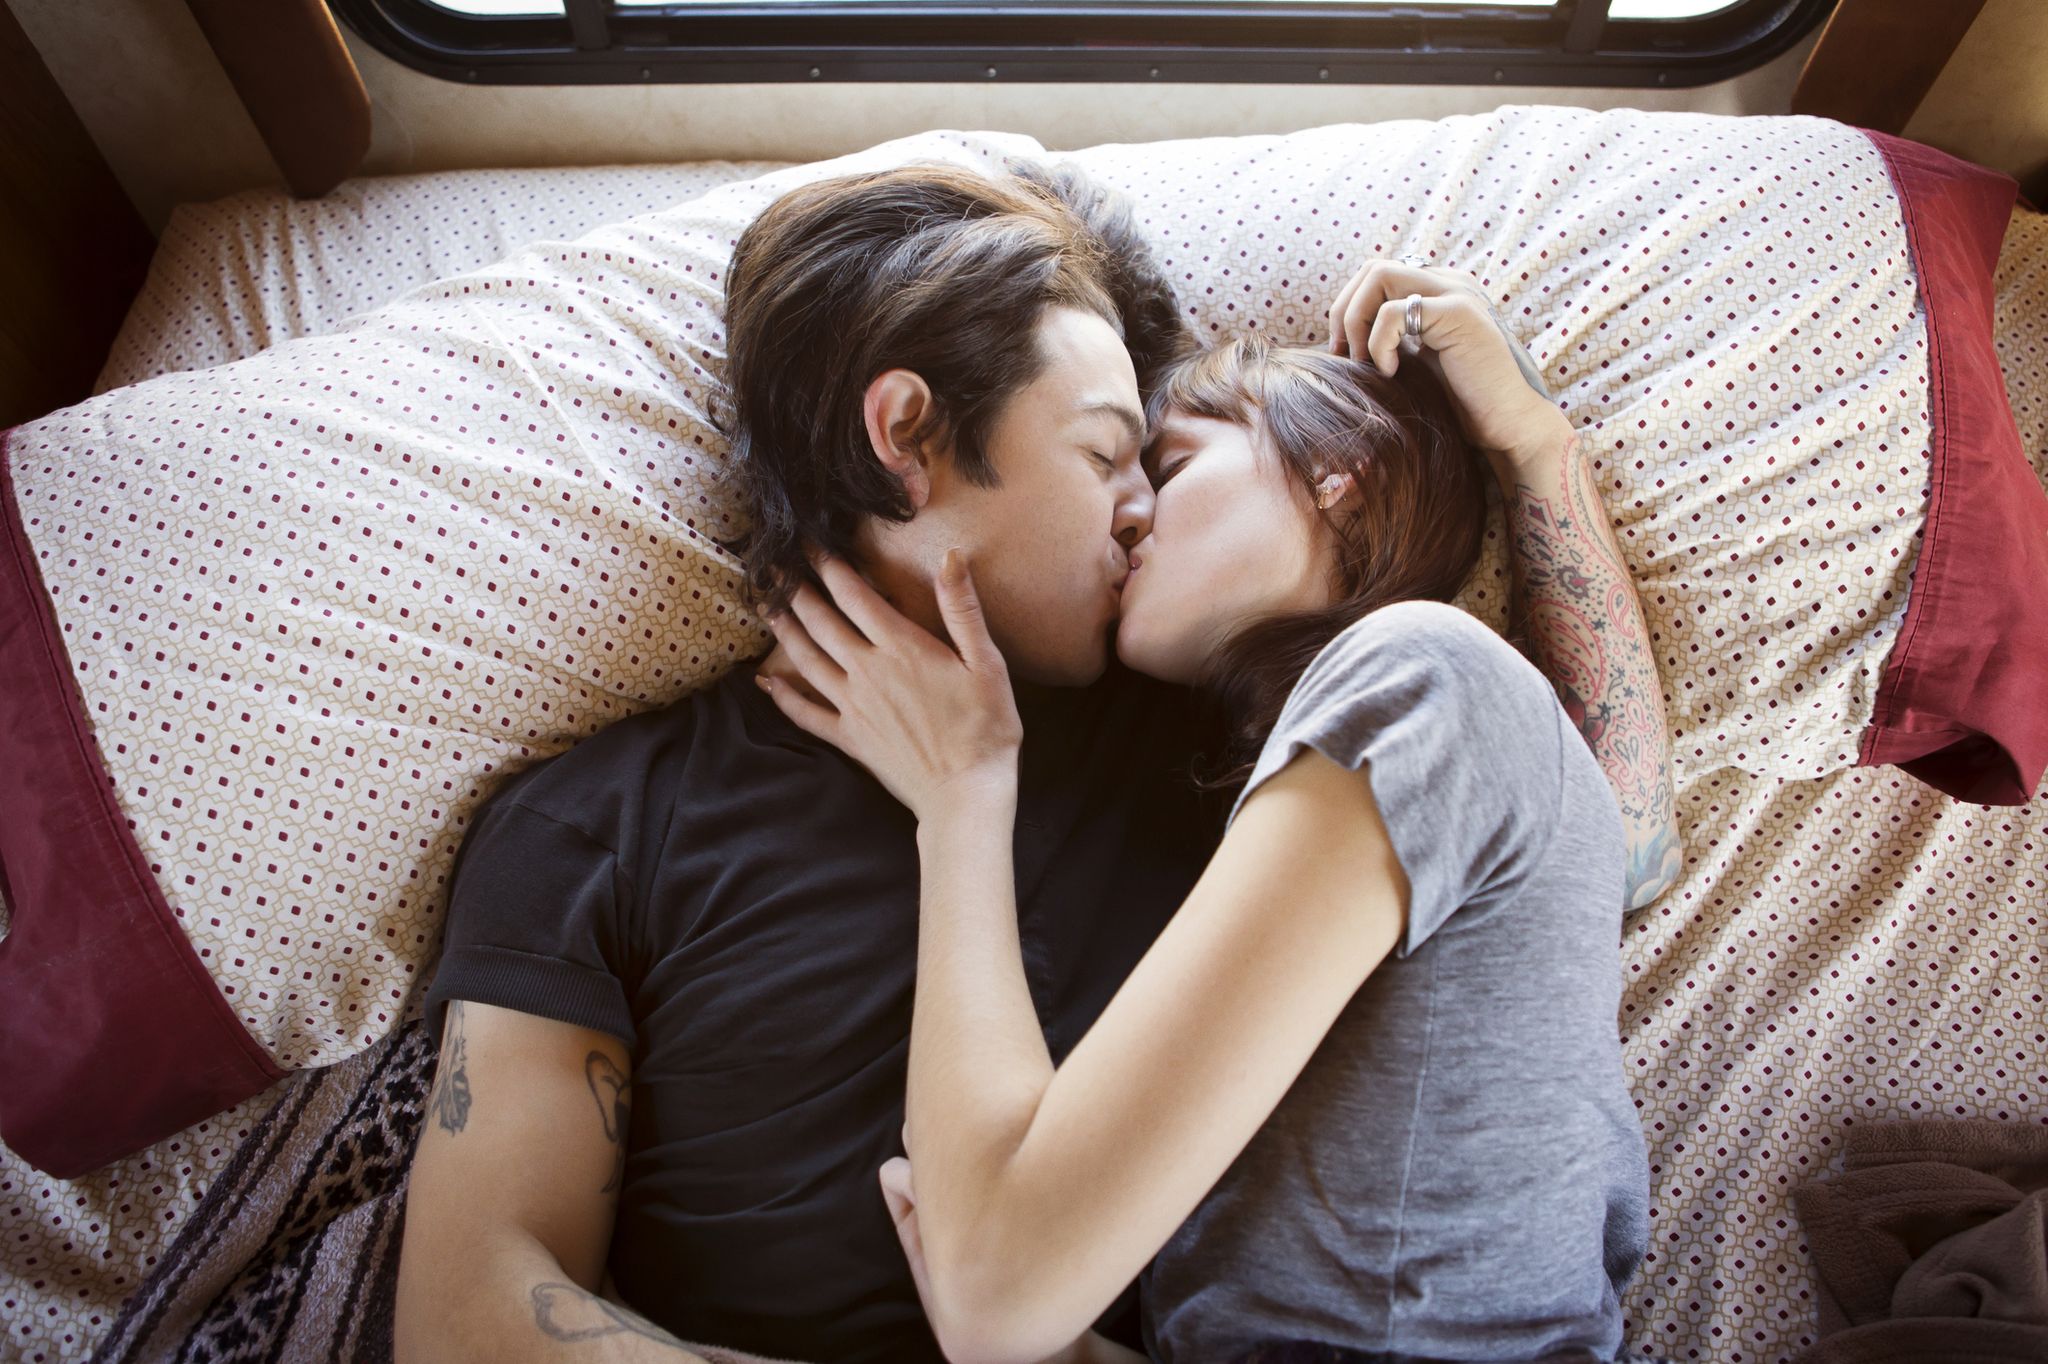 Threesome love. Первое свидание в постели. Нежный поцелуй фото. Переспать на первом свидании.